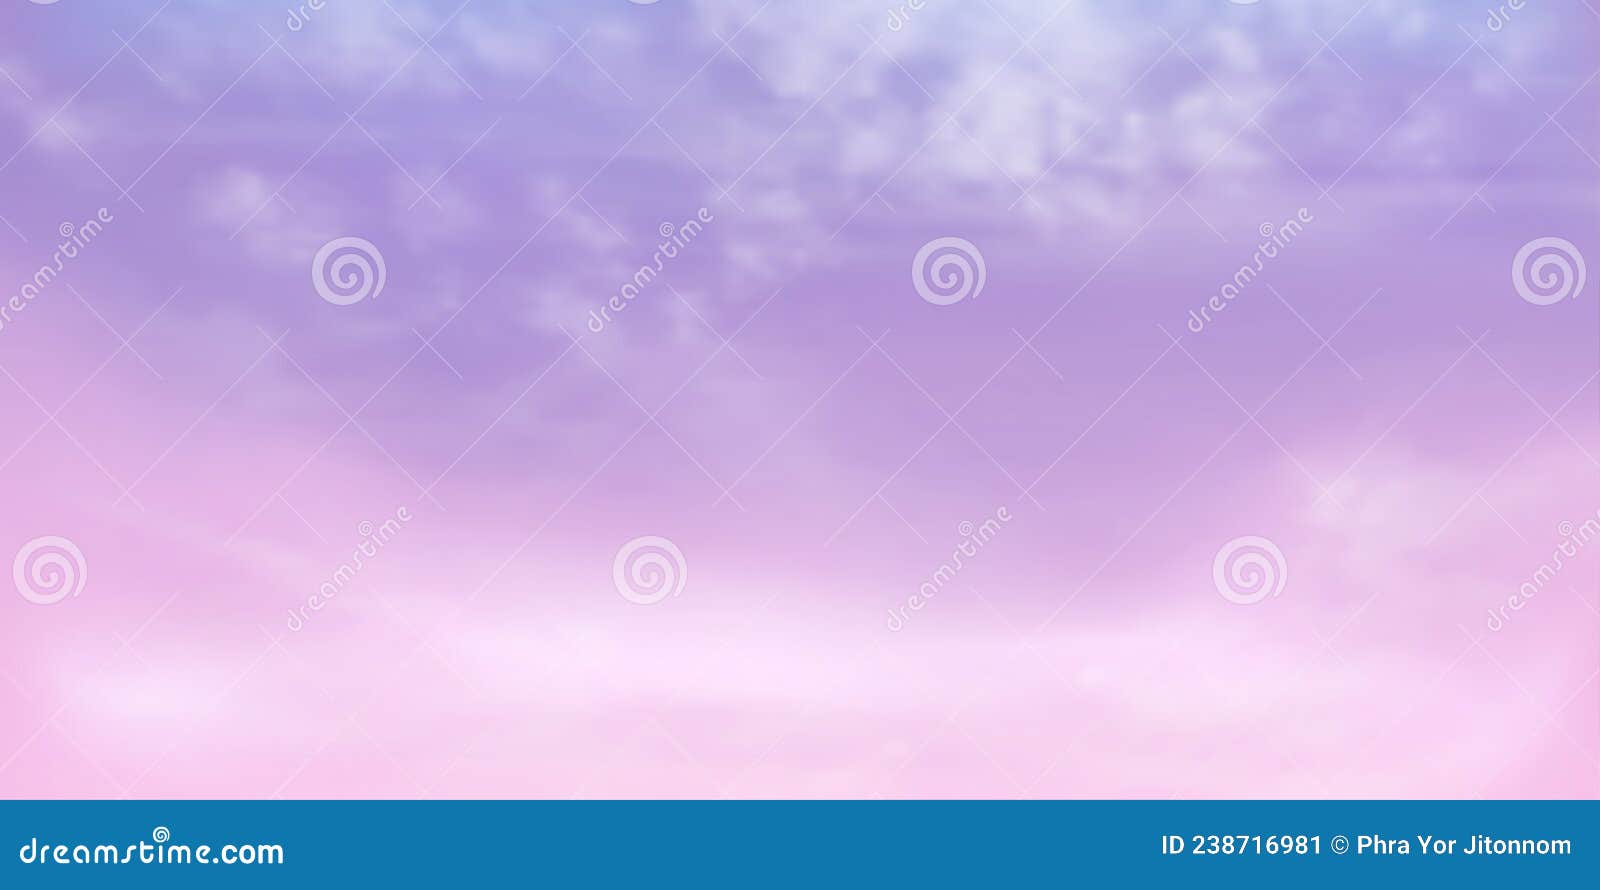 Hãy để mắt cảm nhận vẻ đẹp của bầu trời tím hồng, tông màu hoàn toàn khác biệt mà không phải ai cũng có cơ hội thấy. Với sắc tím huyền bí và hồng ngọt ngào, bầu trời tím hồng chính là điểm nhấn tuyệt vời trong bức ảnh.